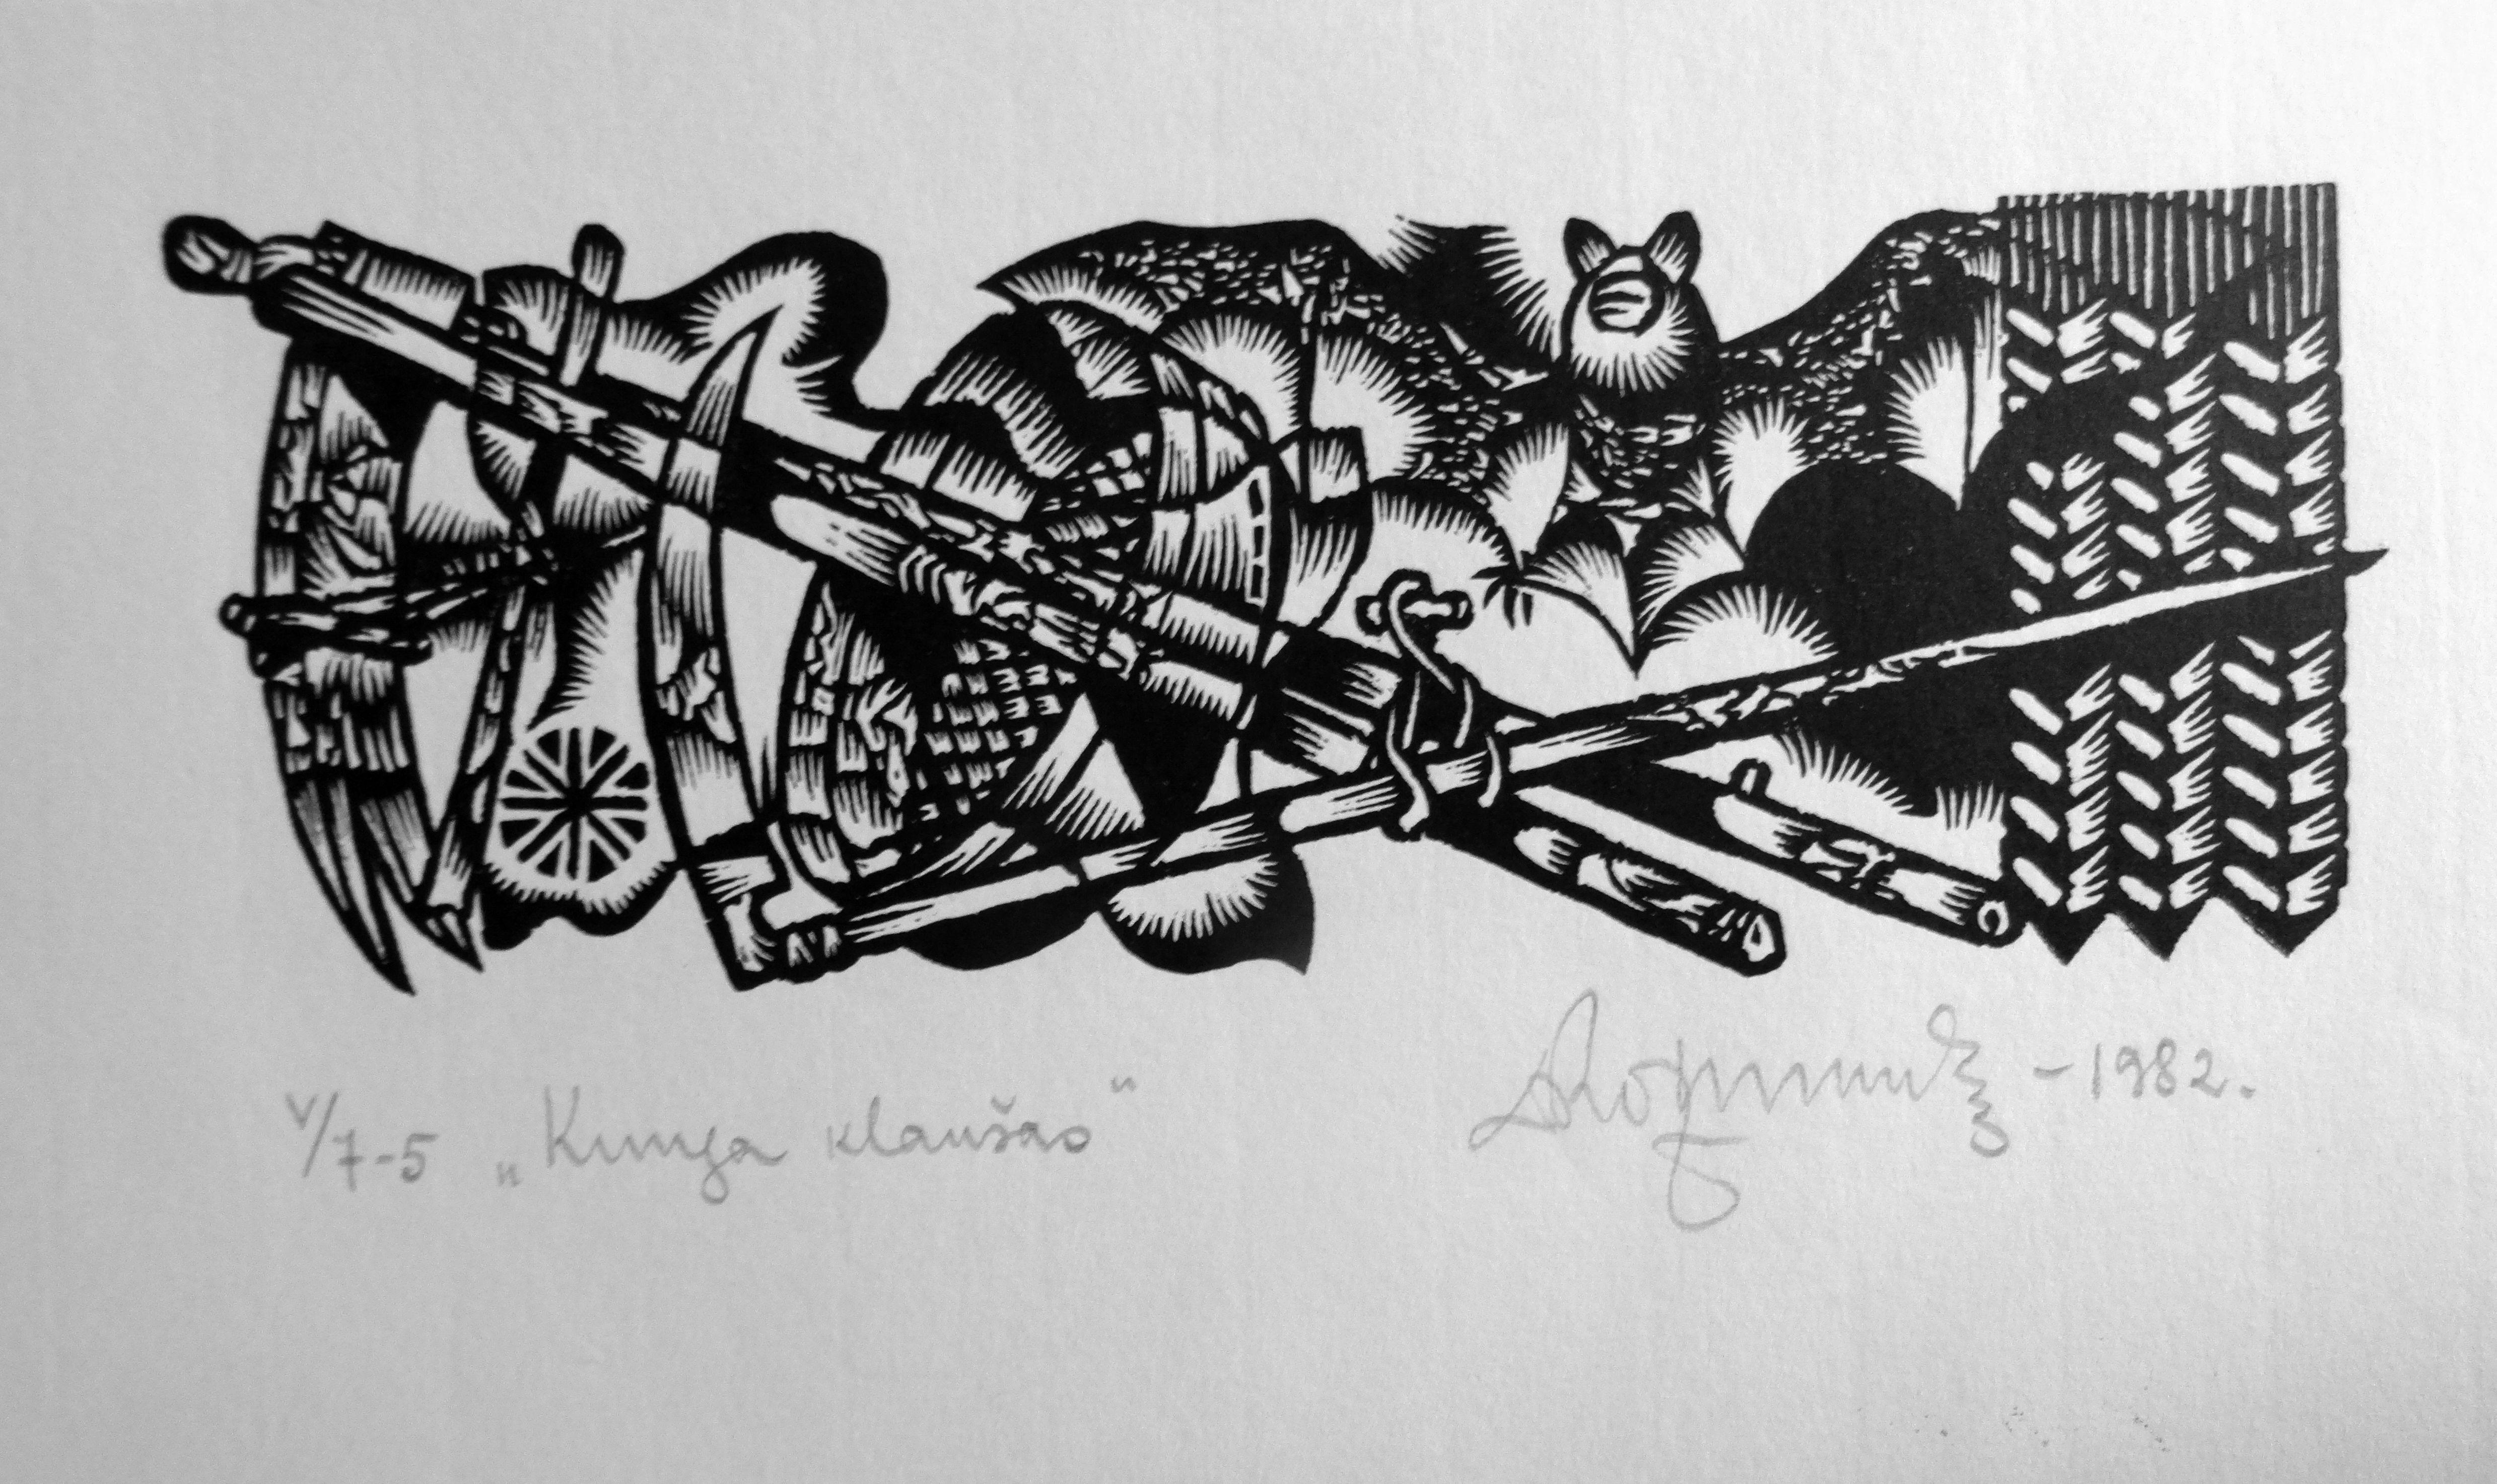 Fledermaus und Werkzeug. 1982. Papier, Linolschnitt, 20x34 cm